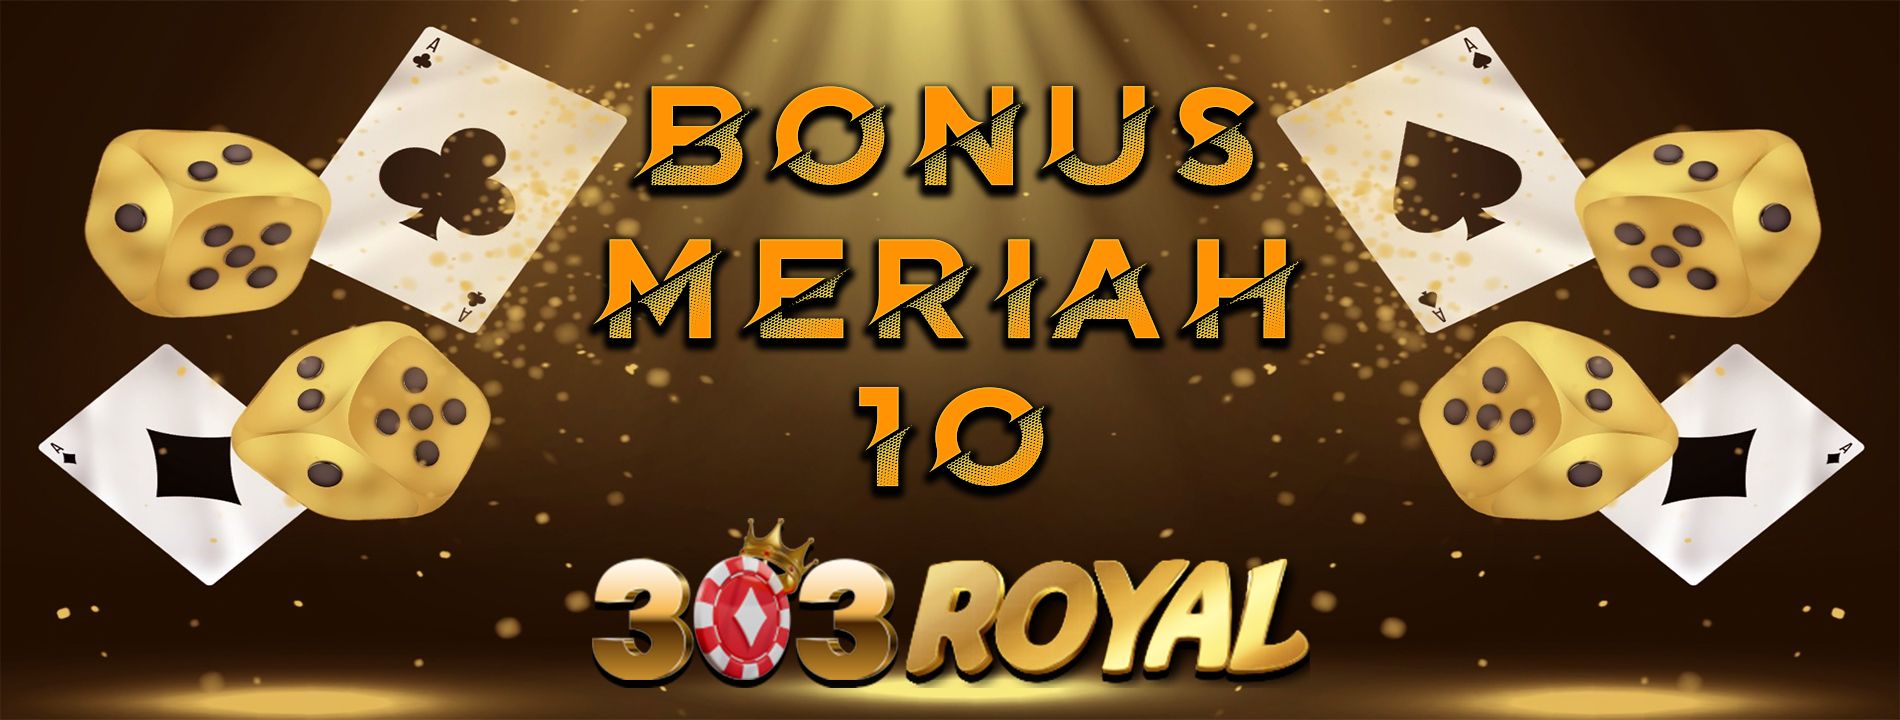 303Royal Bonus Meriah 10